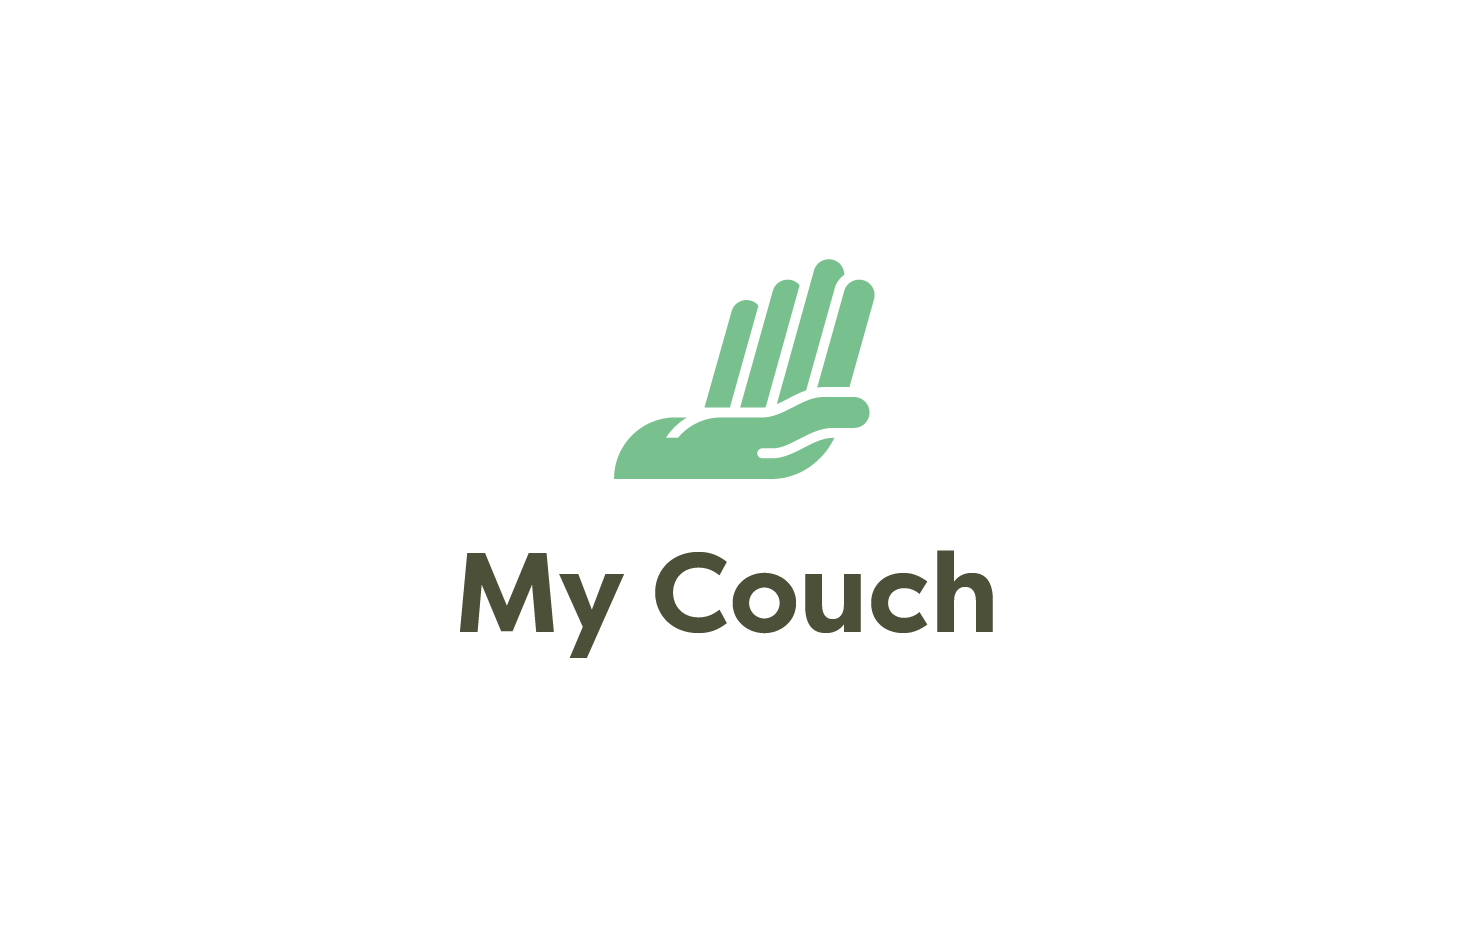 Couch Logo - My Couch — Tim Van den Broeck